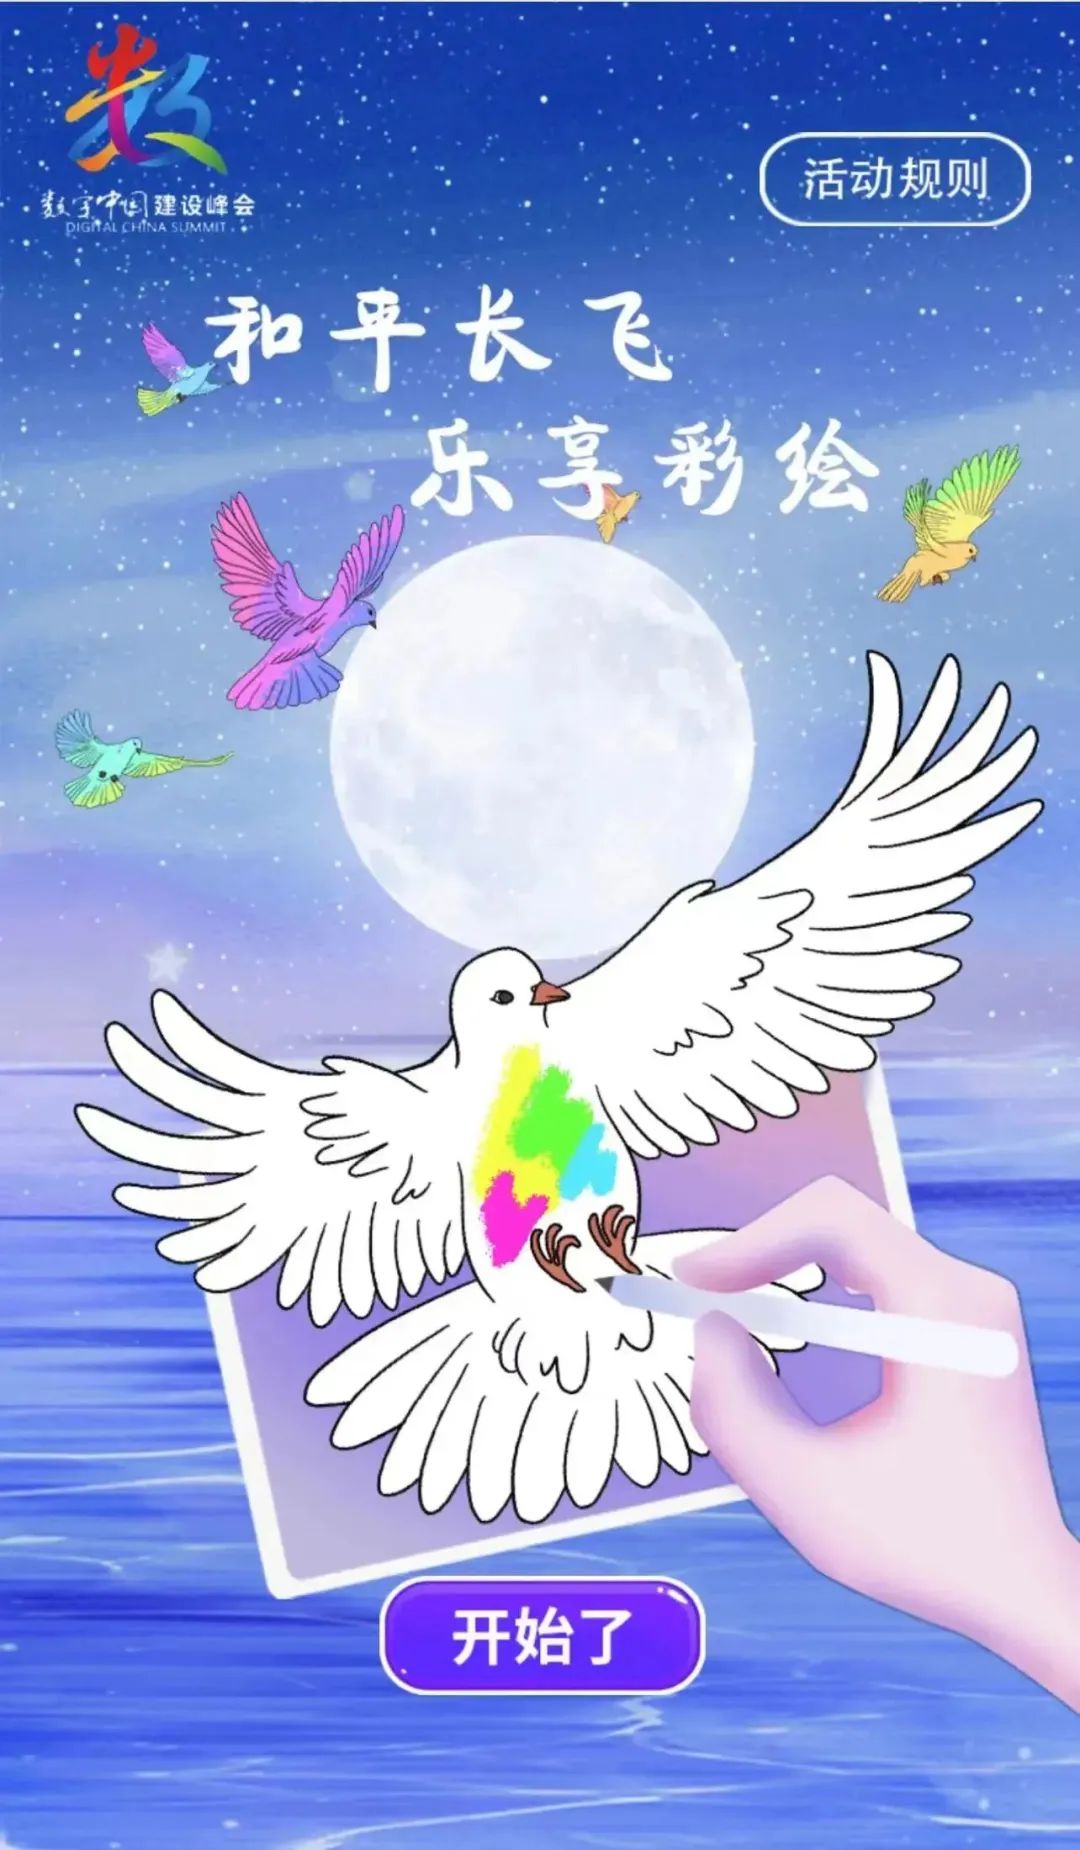 喜迎第六届峰会！“数字中国·福启海丝”和平鸽创作全球征集中！